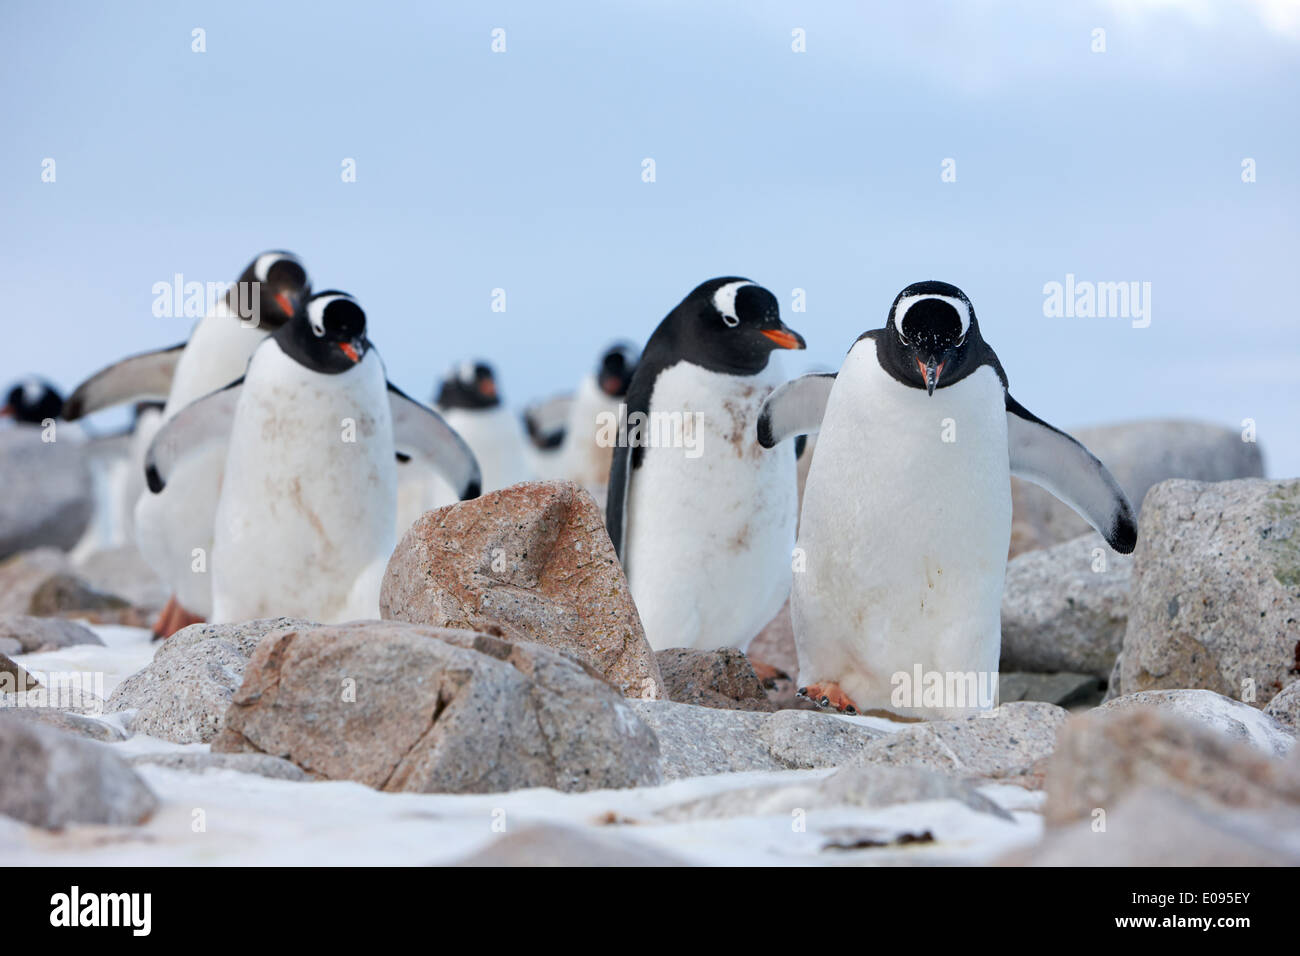 gentoo penguins marching in line through rocky terrain Neko Harbour Antarctica Stock Photo